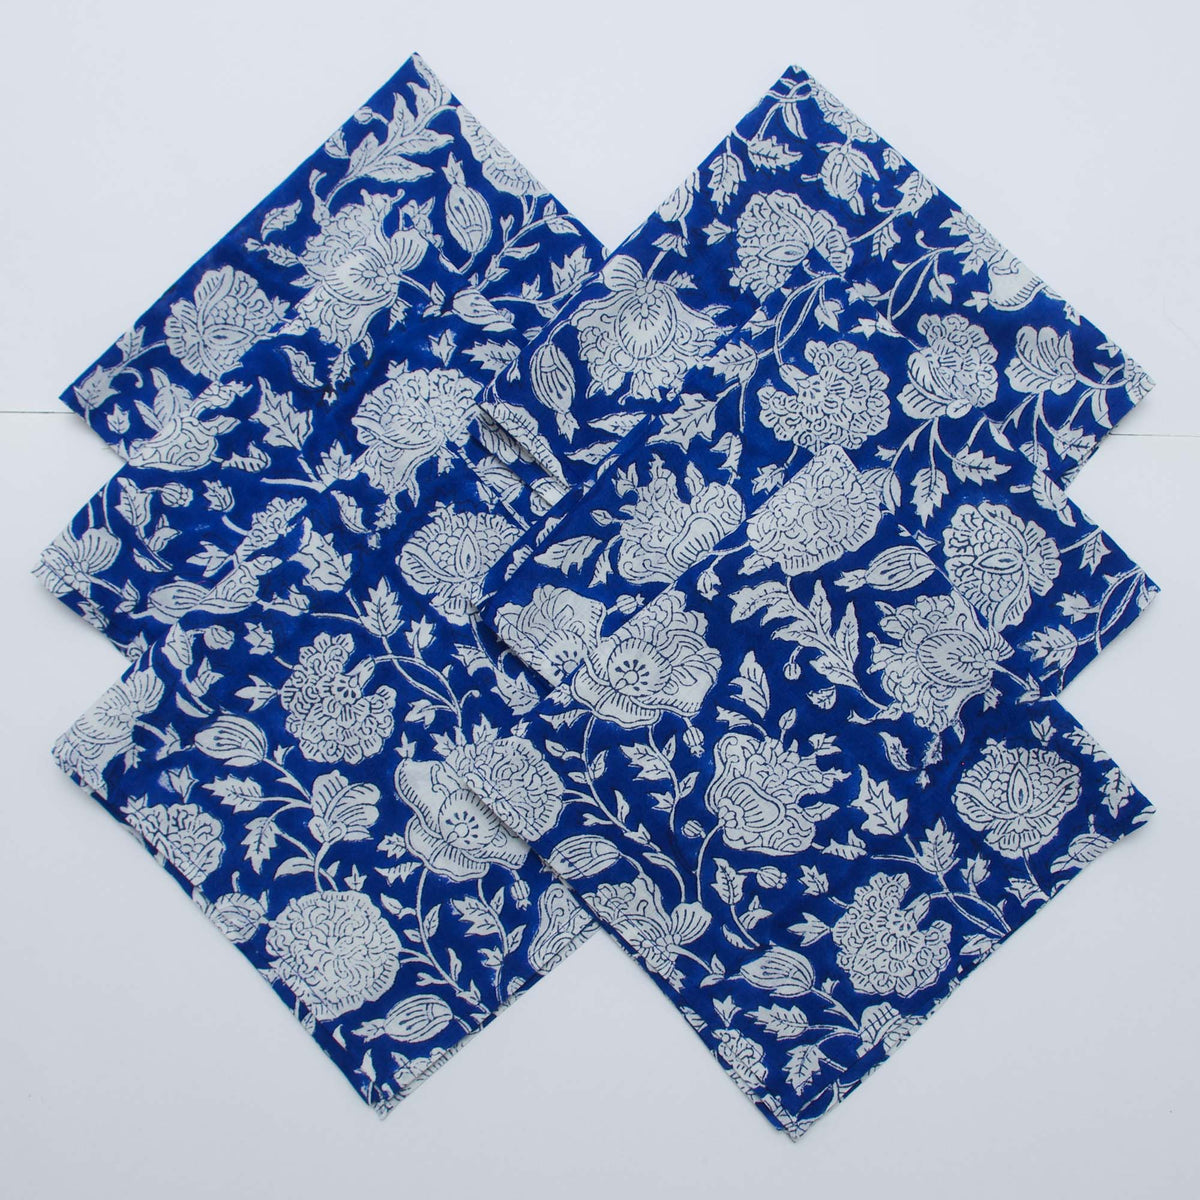 Blue Floral Block Printed Dinner Napkins (16'') - Set of 4